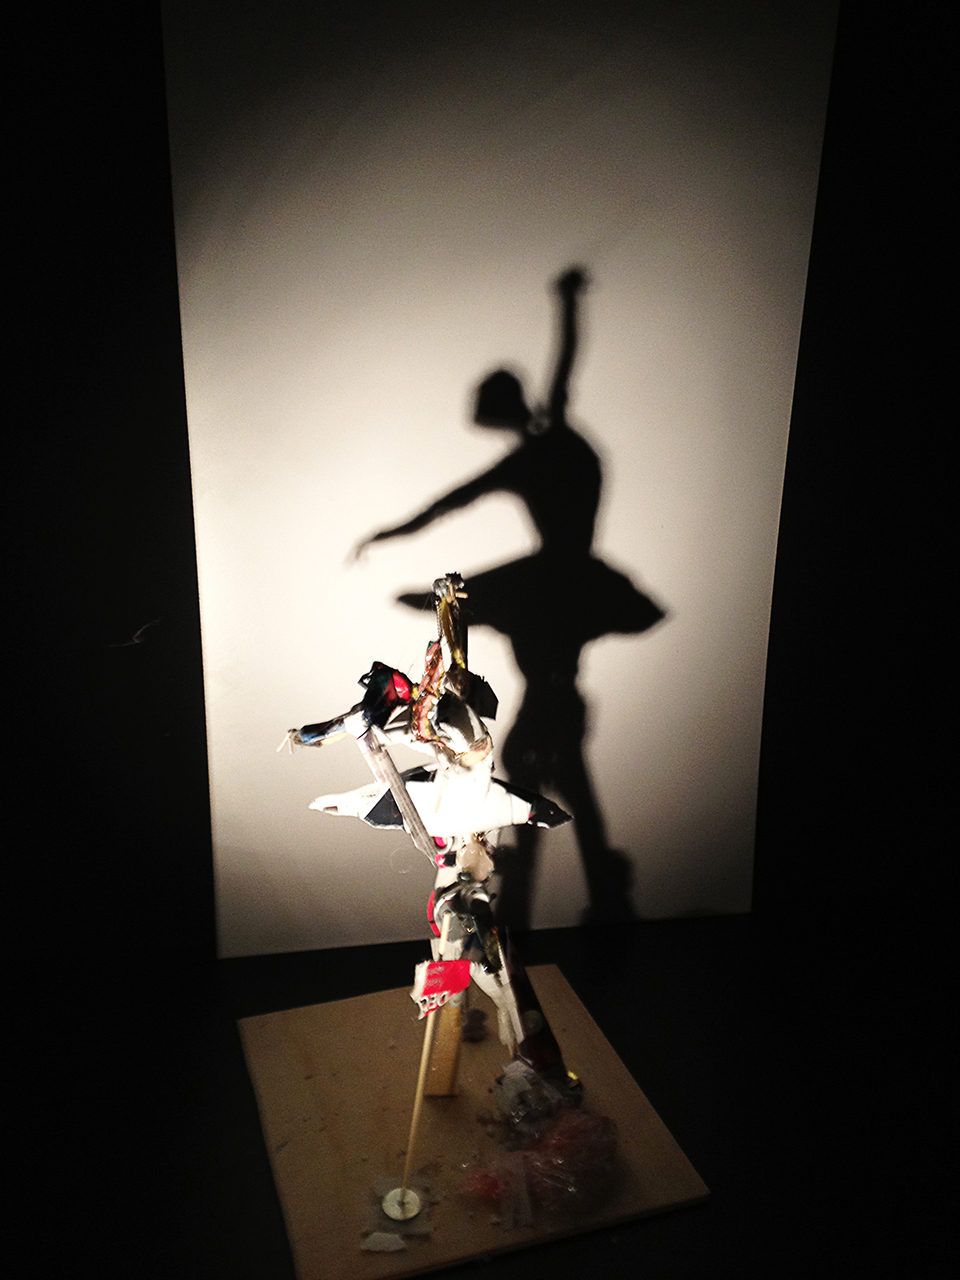 NegaPositive - I build shadows of a ballerina